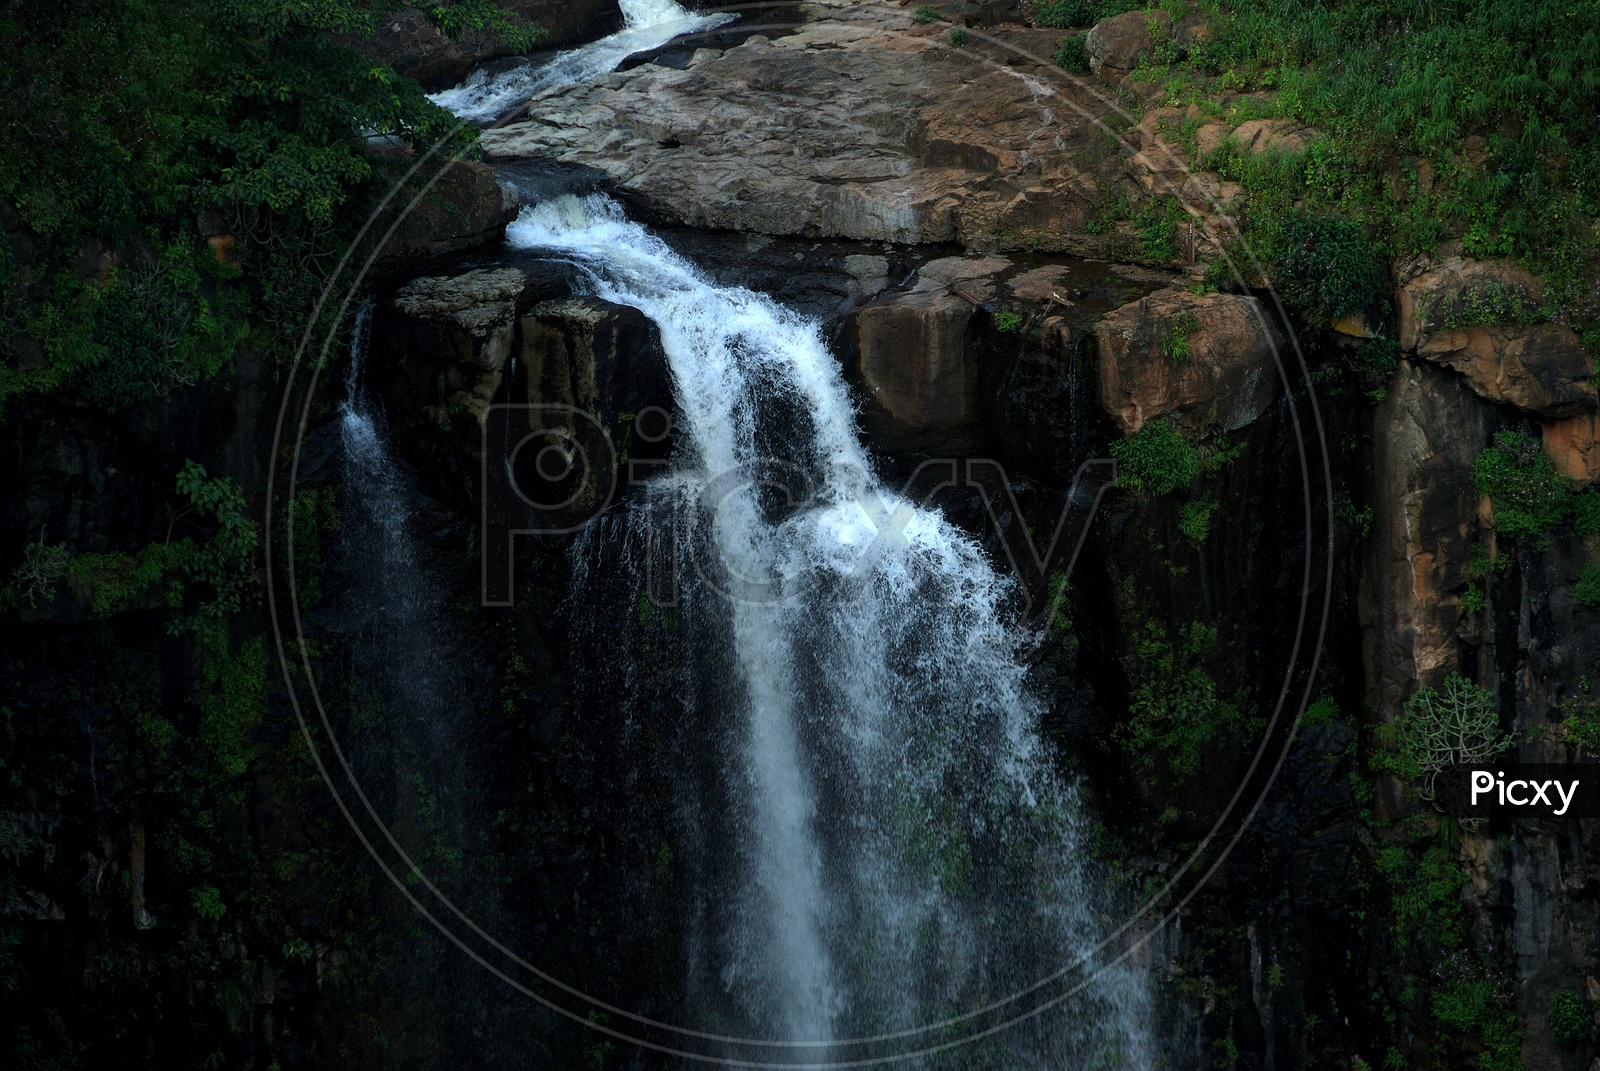 Waterfall at Chikhaldara